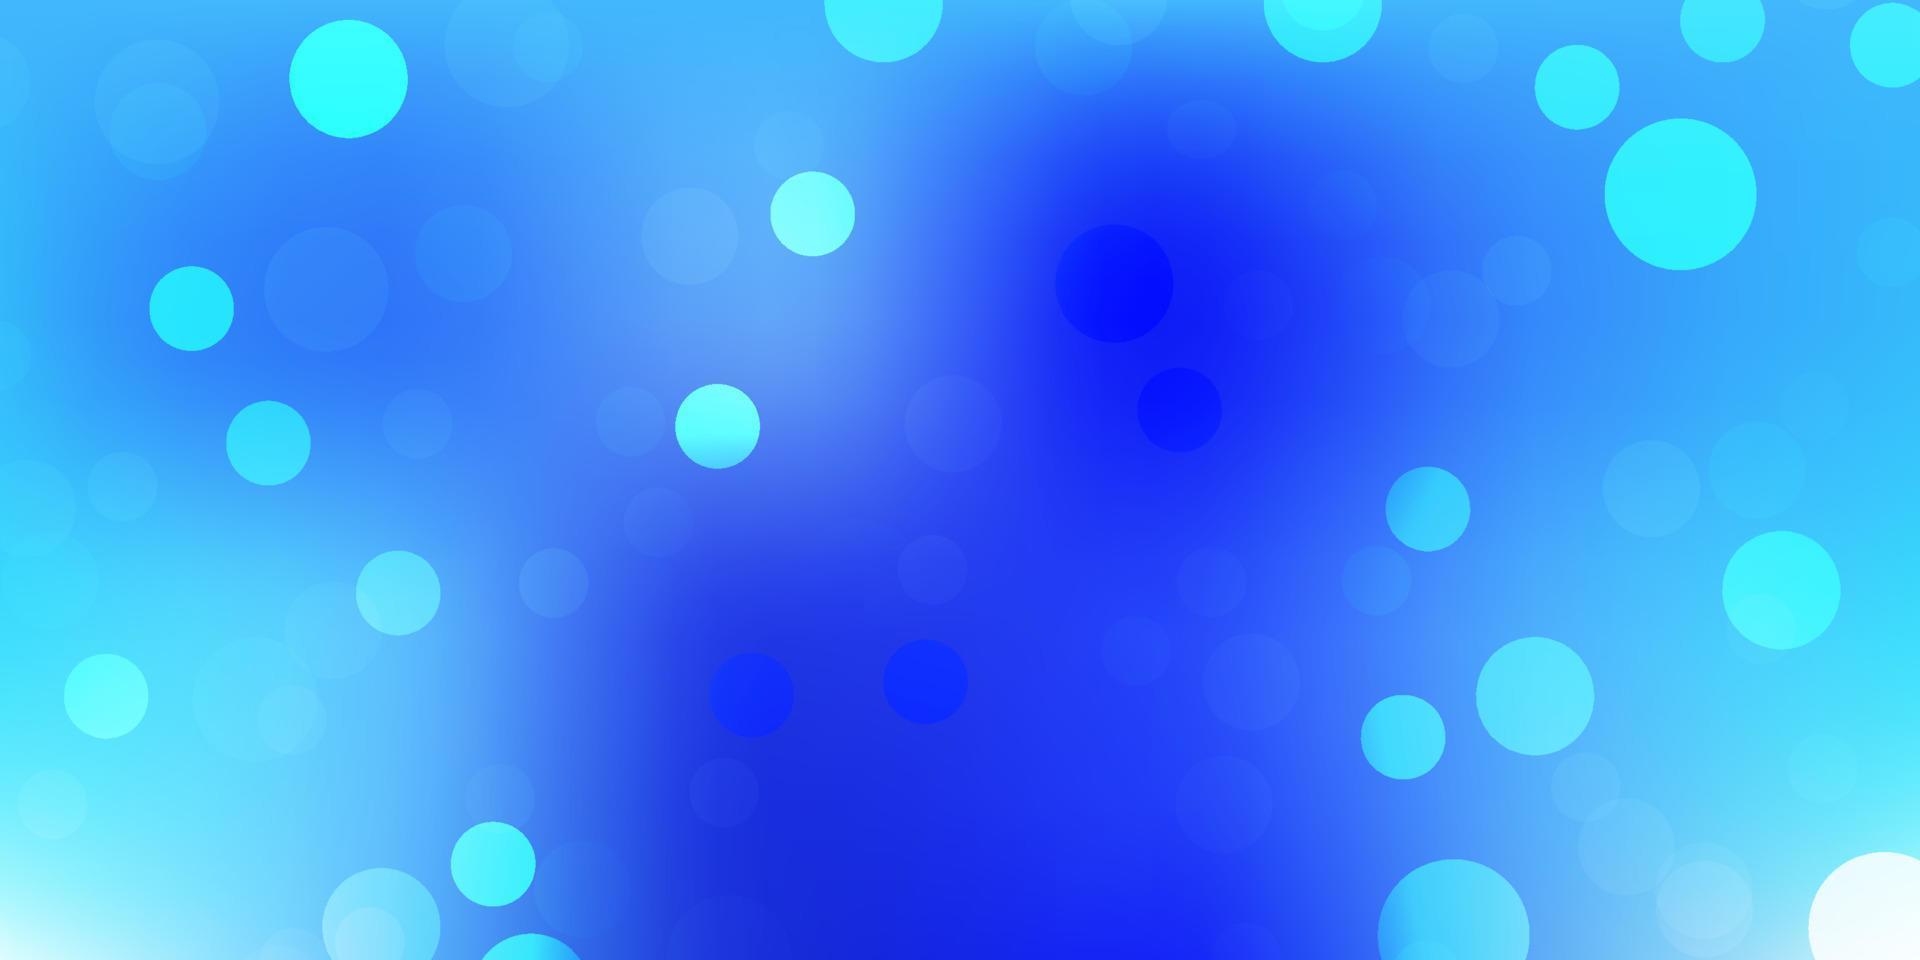 telón de fondo de vector azul claro con puntos.